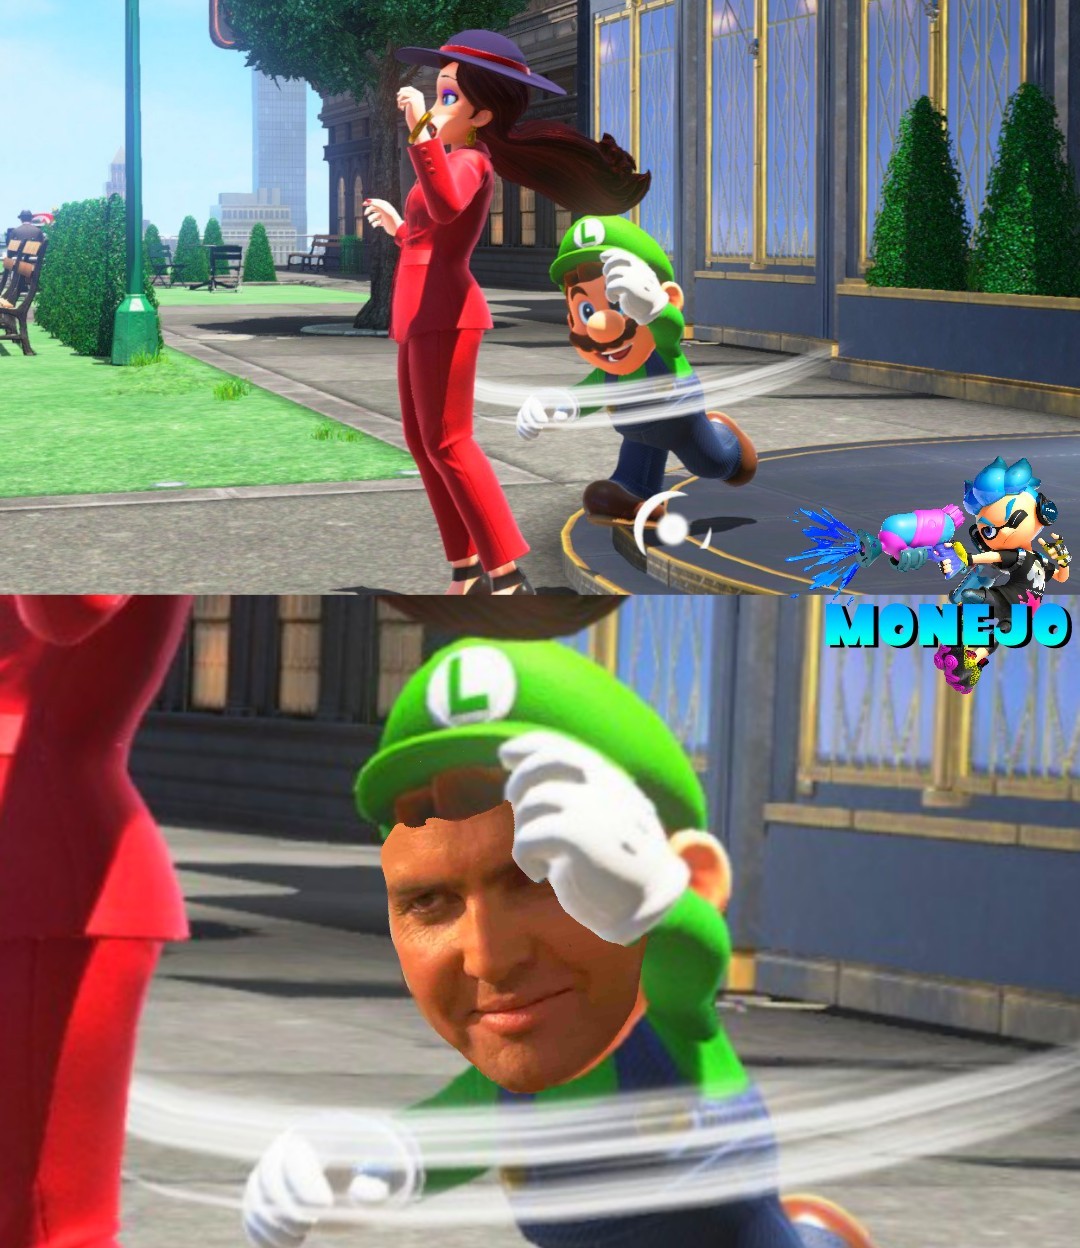 Mario verde - meme